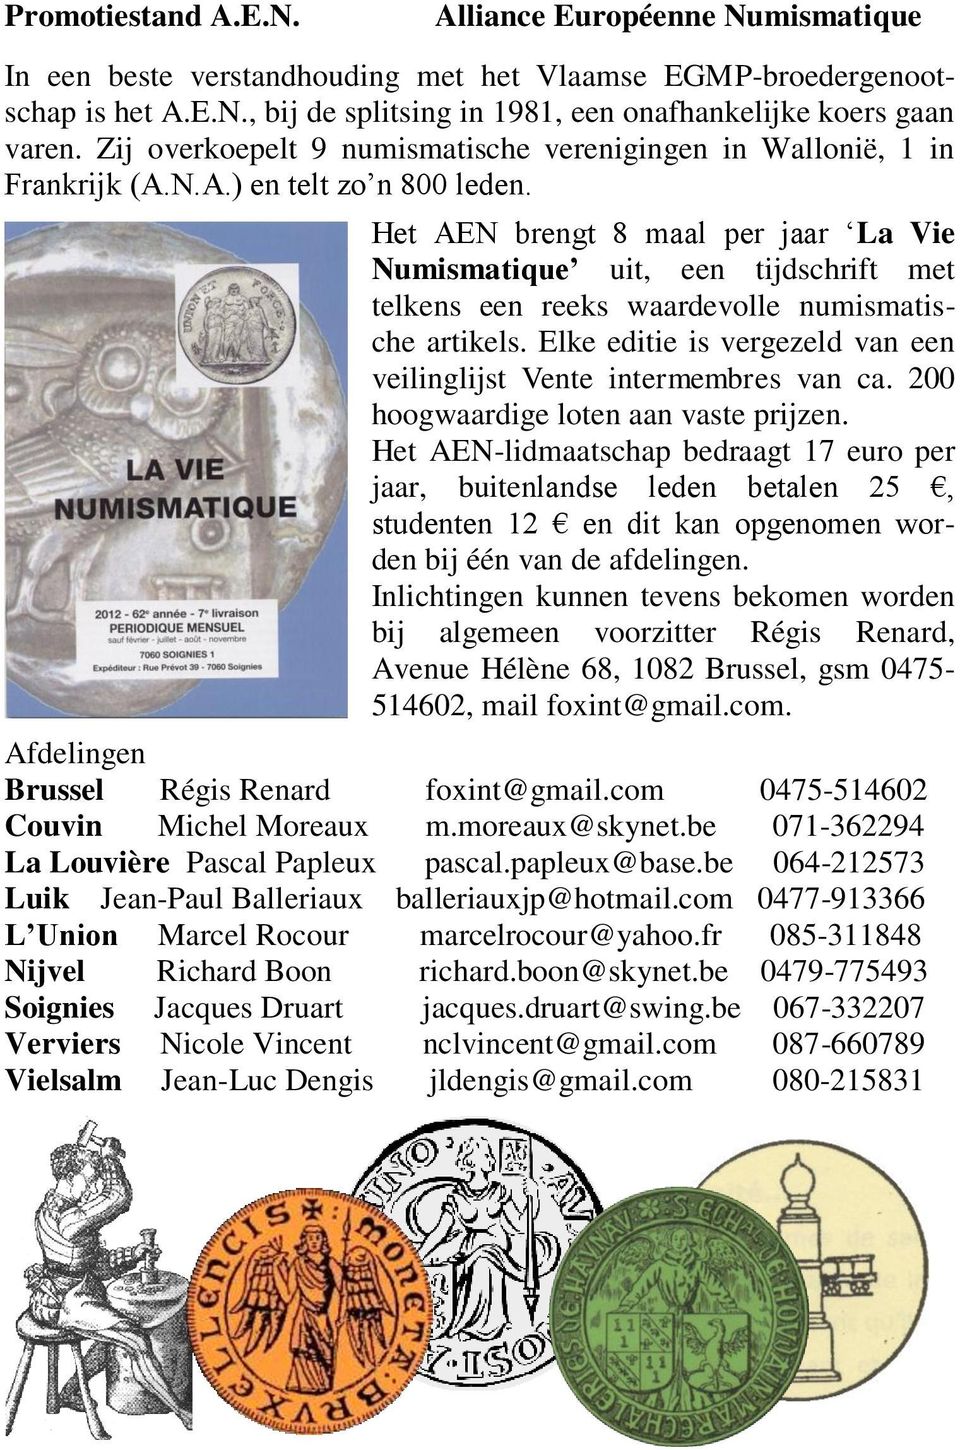 Het AEN brengt 8 maal per jaar La Vie Numismatique uit, een tijdschrift met telkens een reeks waardevolle numismatische artikels.